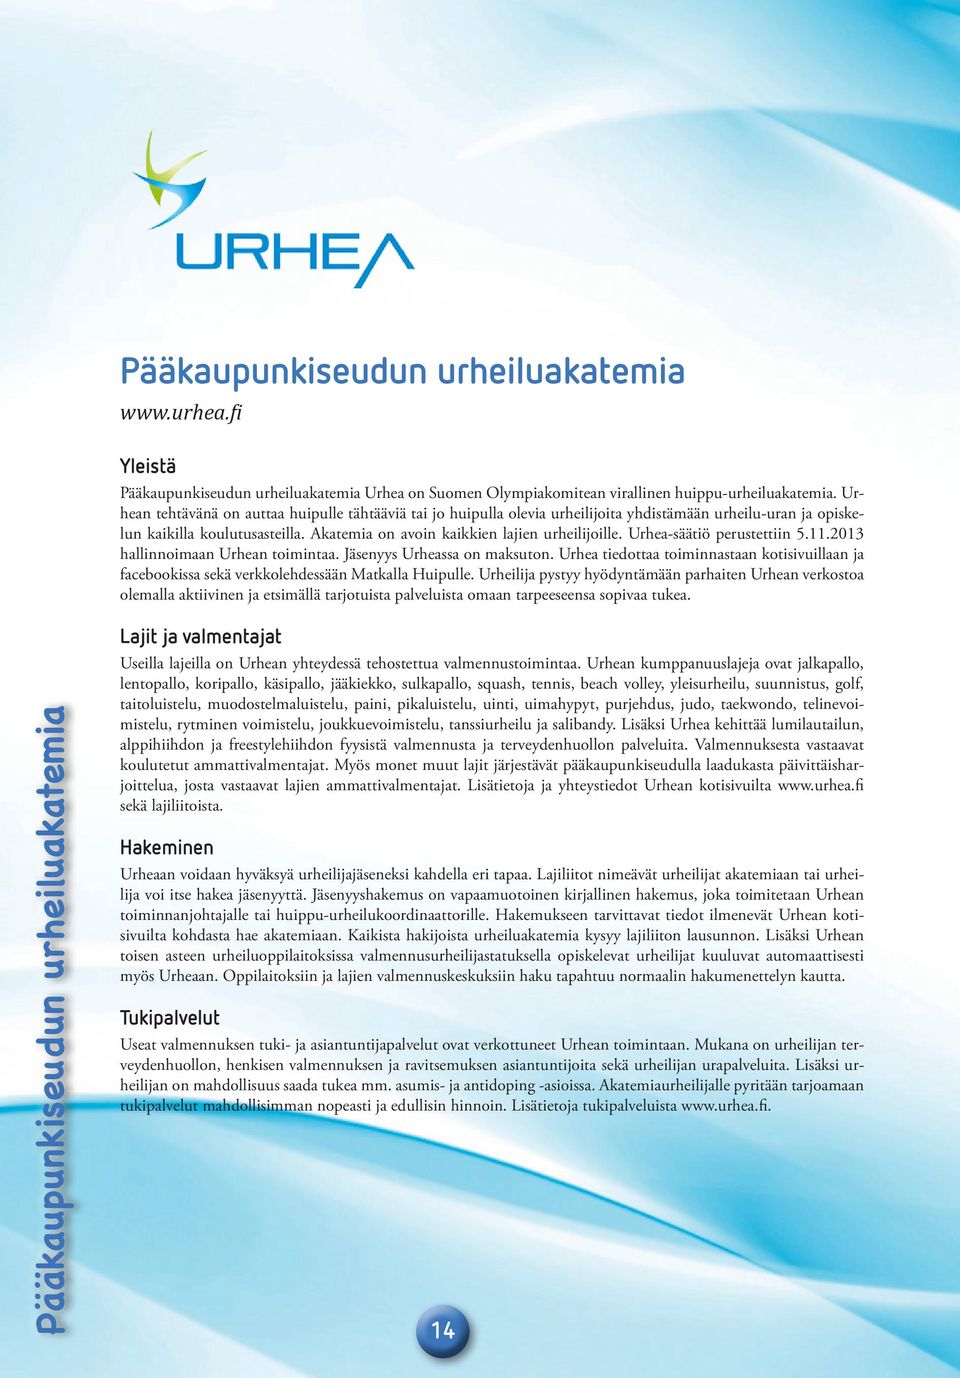 Urhea-säätiö perustettiin 5.11.2013 hallinnoimaan Urhean toimintaa. Jäsenyys Urheassa on maksuton. Urhea tiedottaa toiminnastaan kotisivuillaan ja facebookissa sekä verkkolehdessään Matkalla Huipulle.